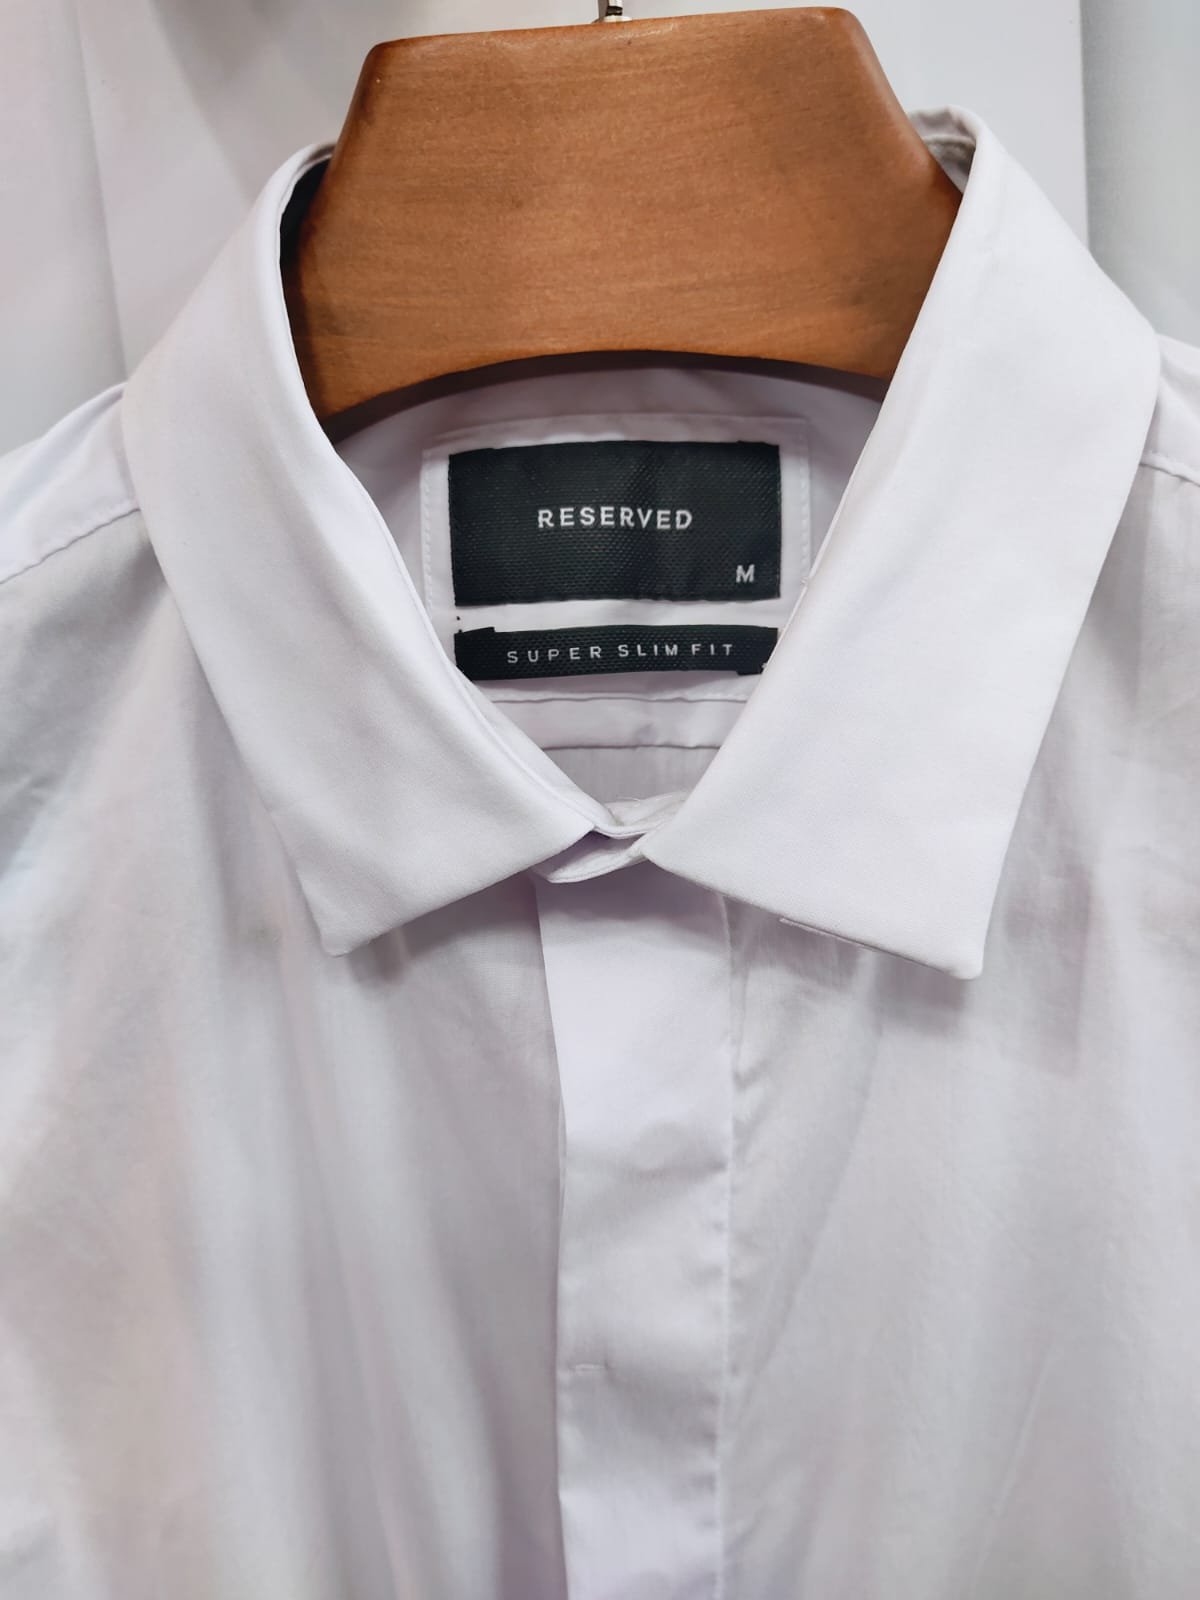 Premium white formal shirt for men in Bangladesh